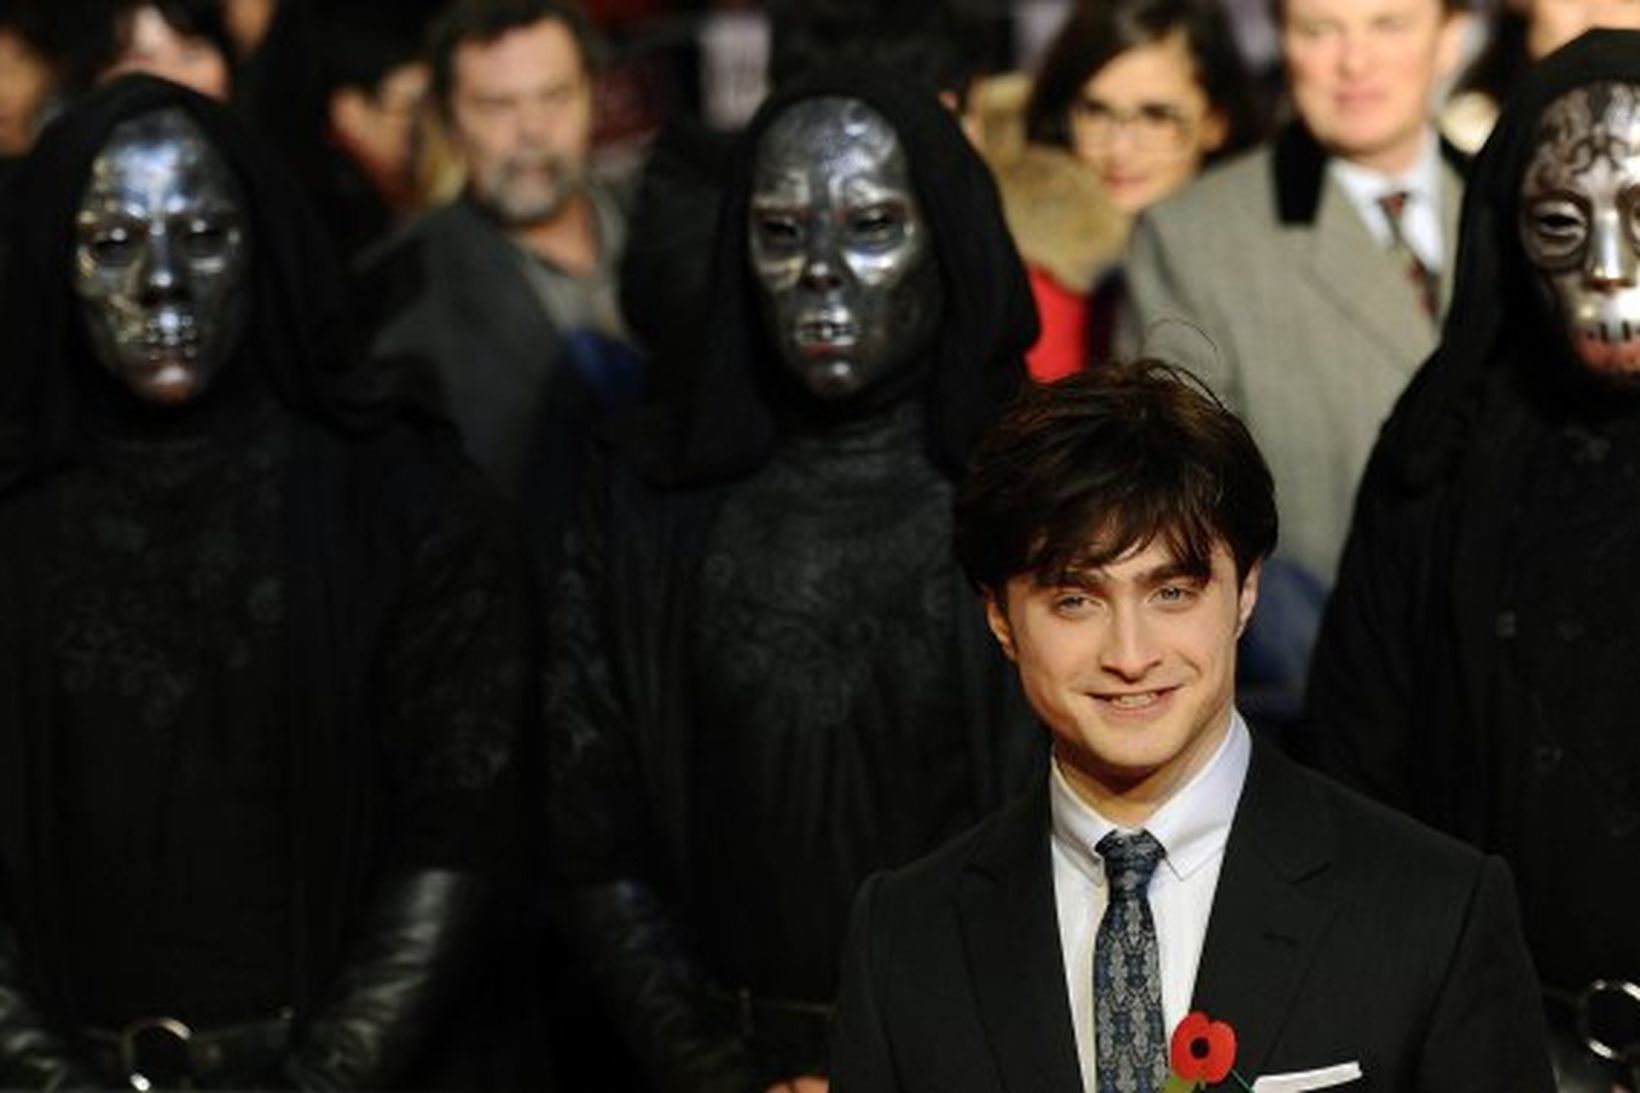 Daniel Radcliffe kemur til frumsýningar á nýjustu myndinni um Harry …